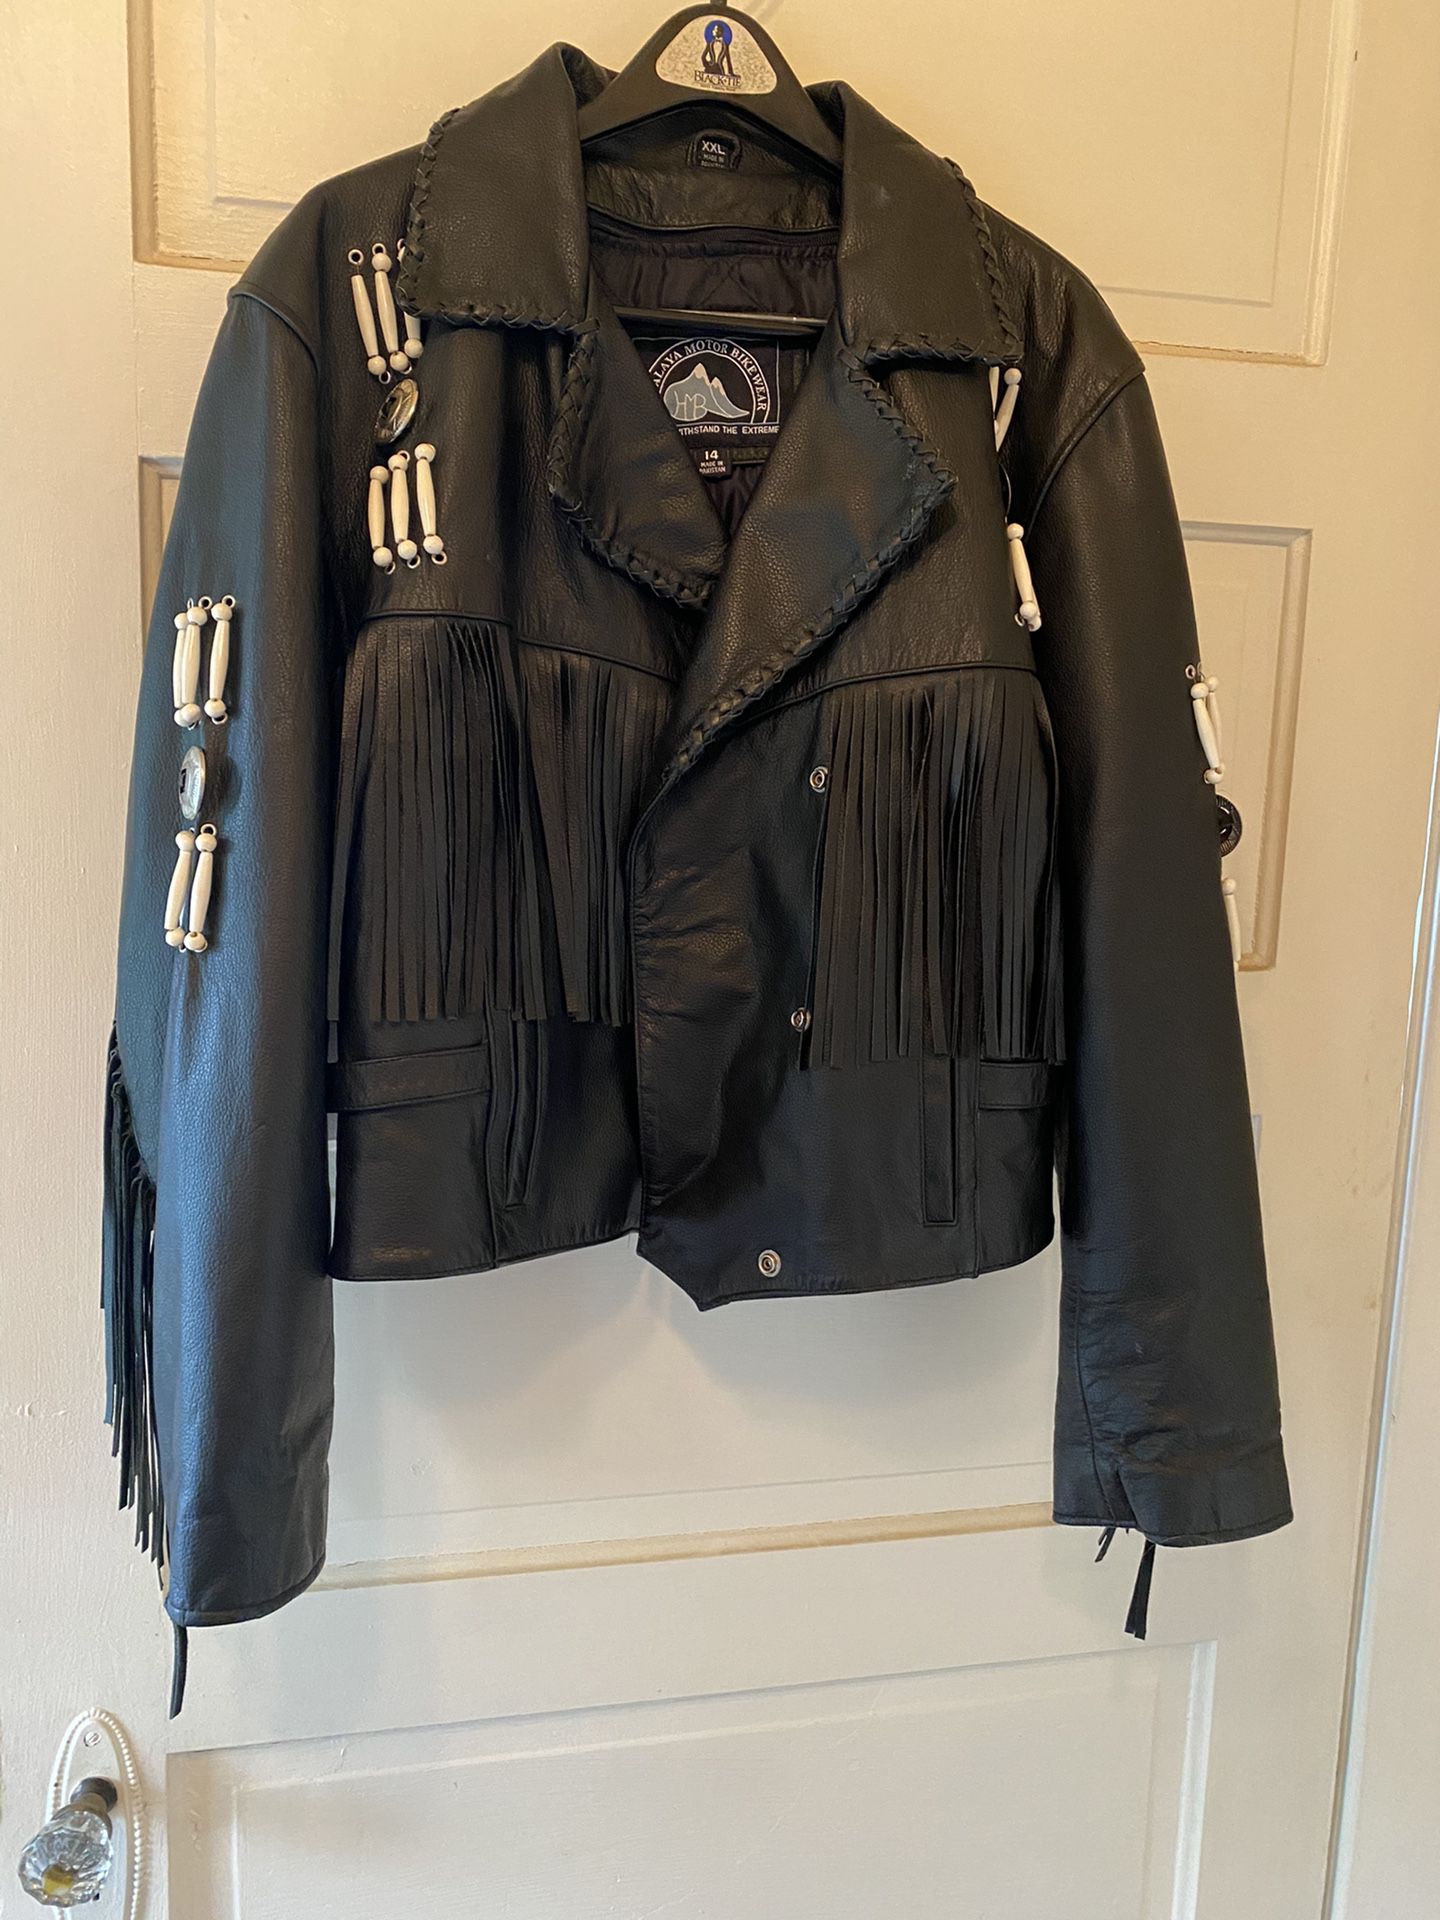 Ladies leather motorcycle jacket